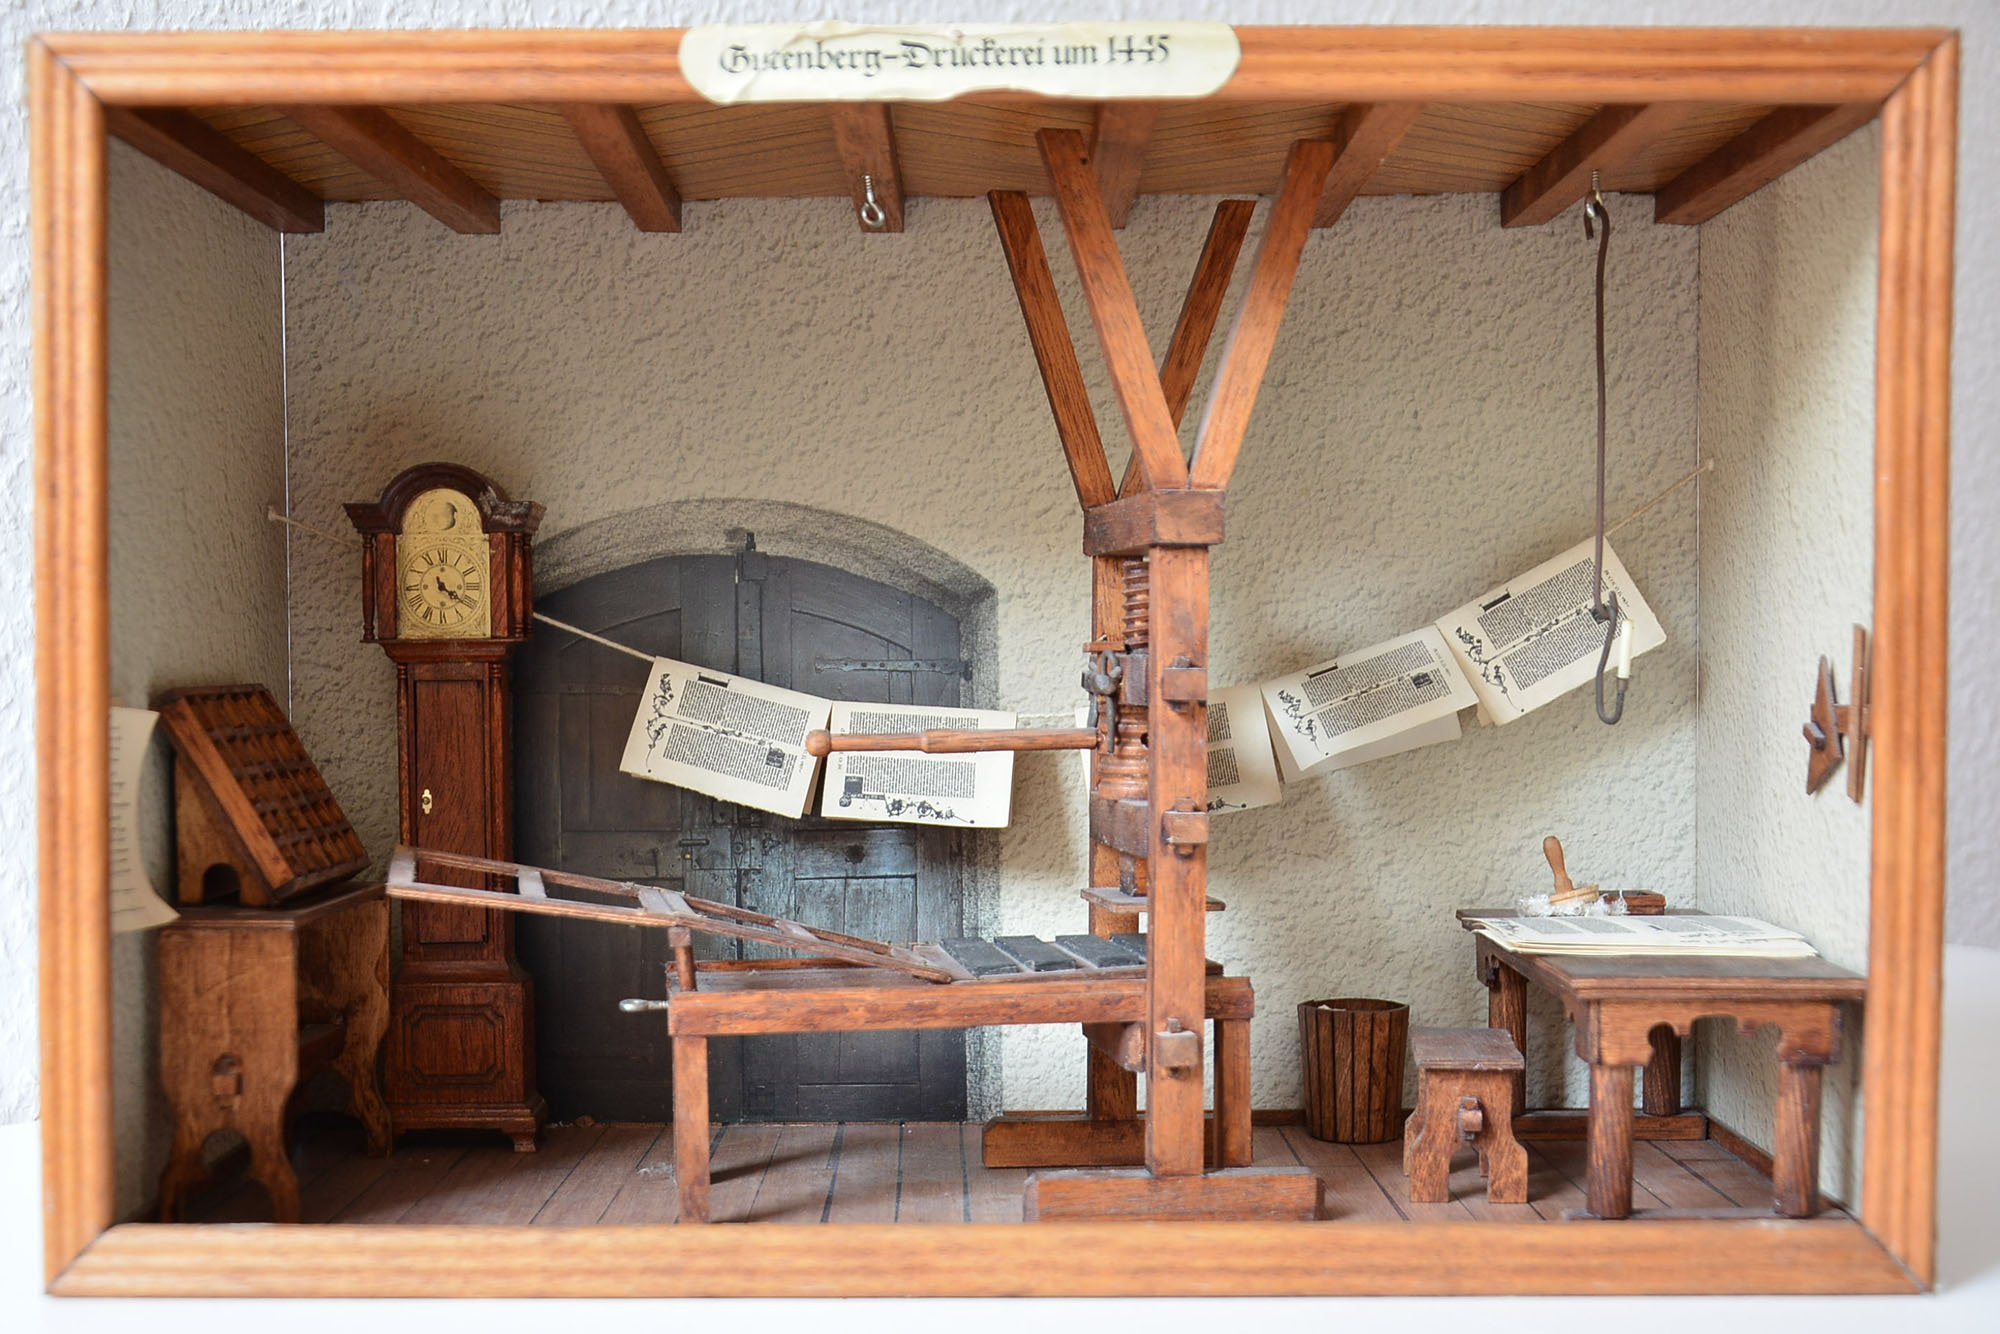 Modell historische Druckerei Gutenbergs um 1445 (Museum für Druckkunst Leipzig CC BY-NC-SA)